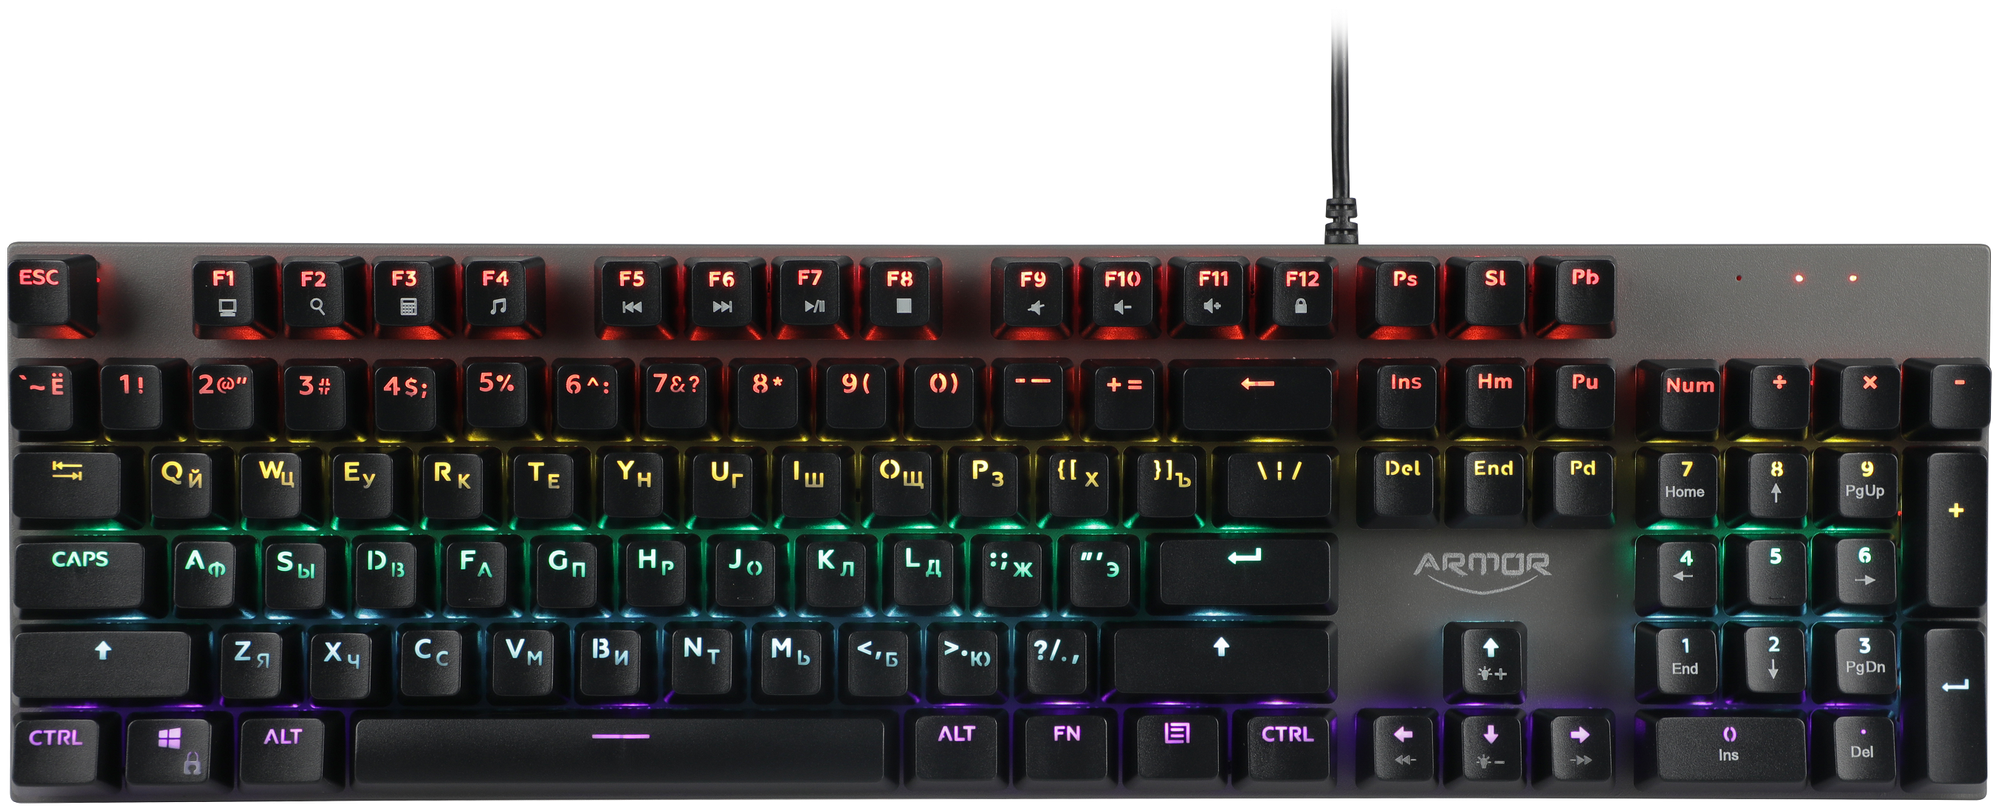 Клавиатура механическая игровая CBR KB 883 Armor, USB, 104 кл., свитчи Huano Red, Anti-Ghosting, N-key rollover, Rainbow LED, кабель 1,8 м